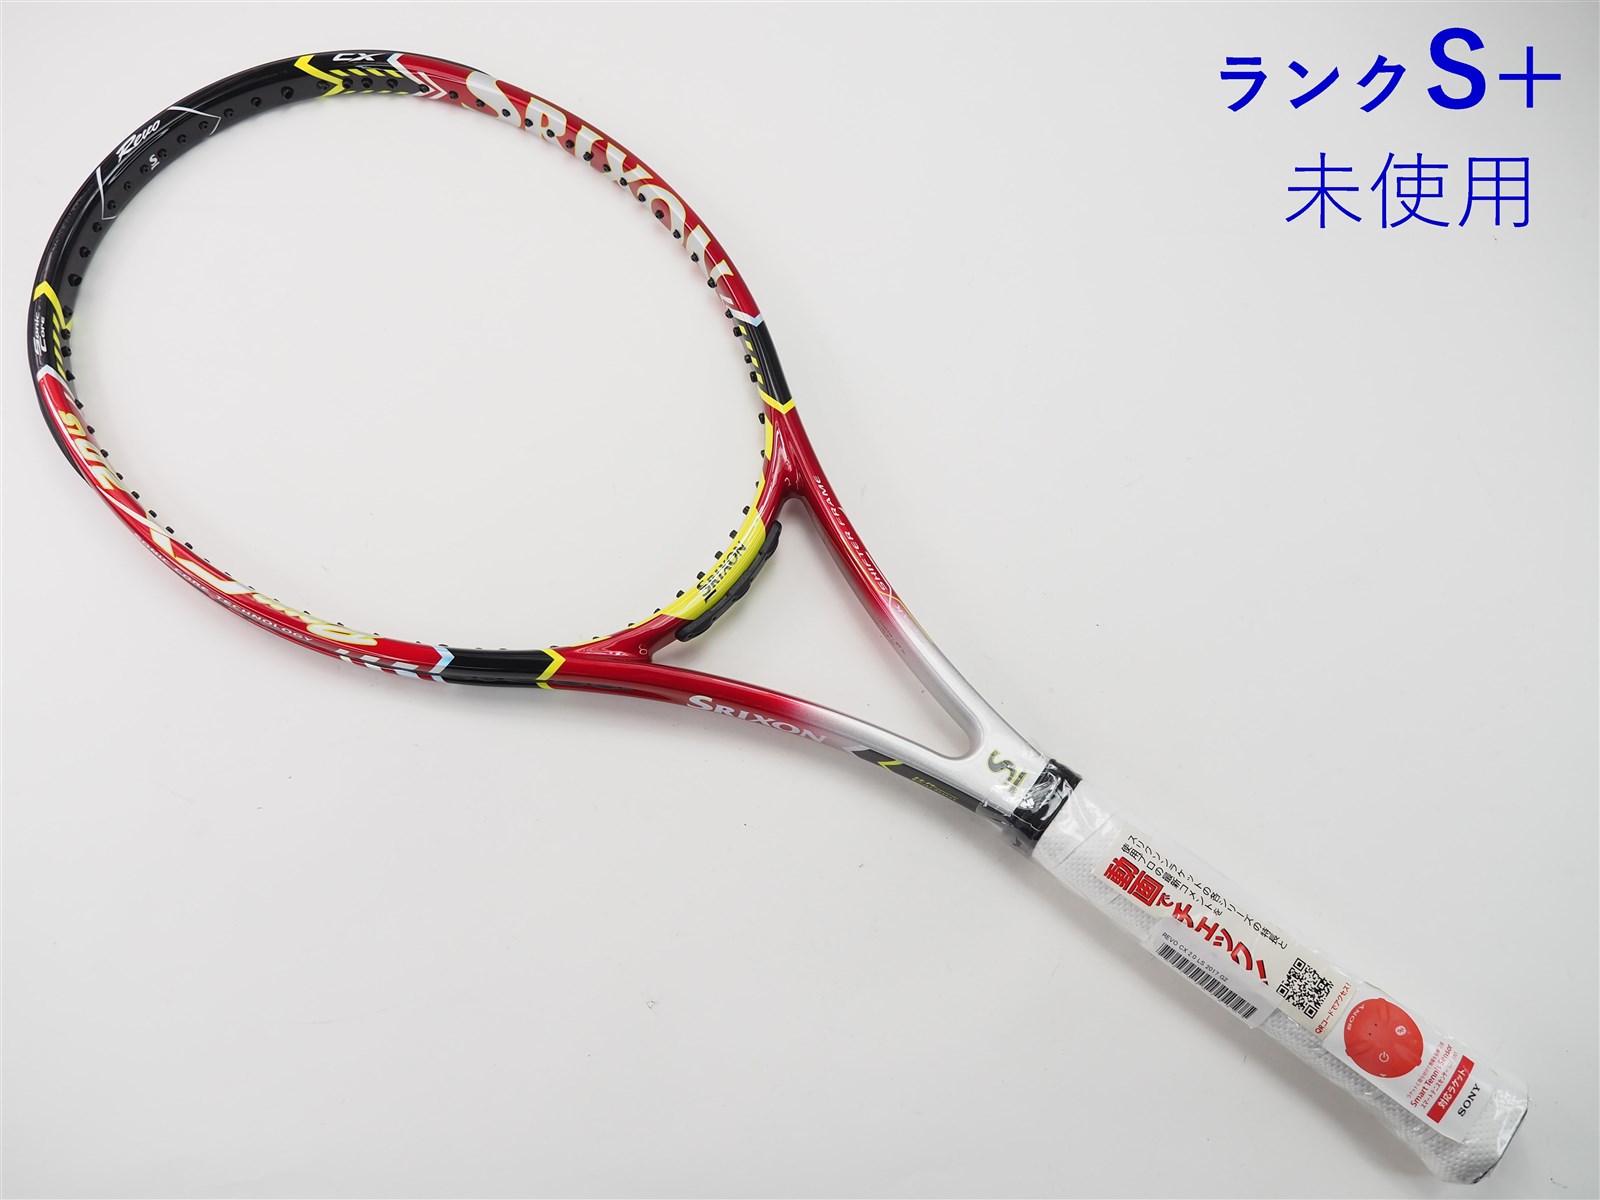 prince グラファイト マイケル•チャンモデル 硬式用 テニス ラケット